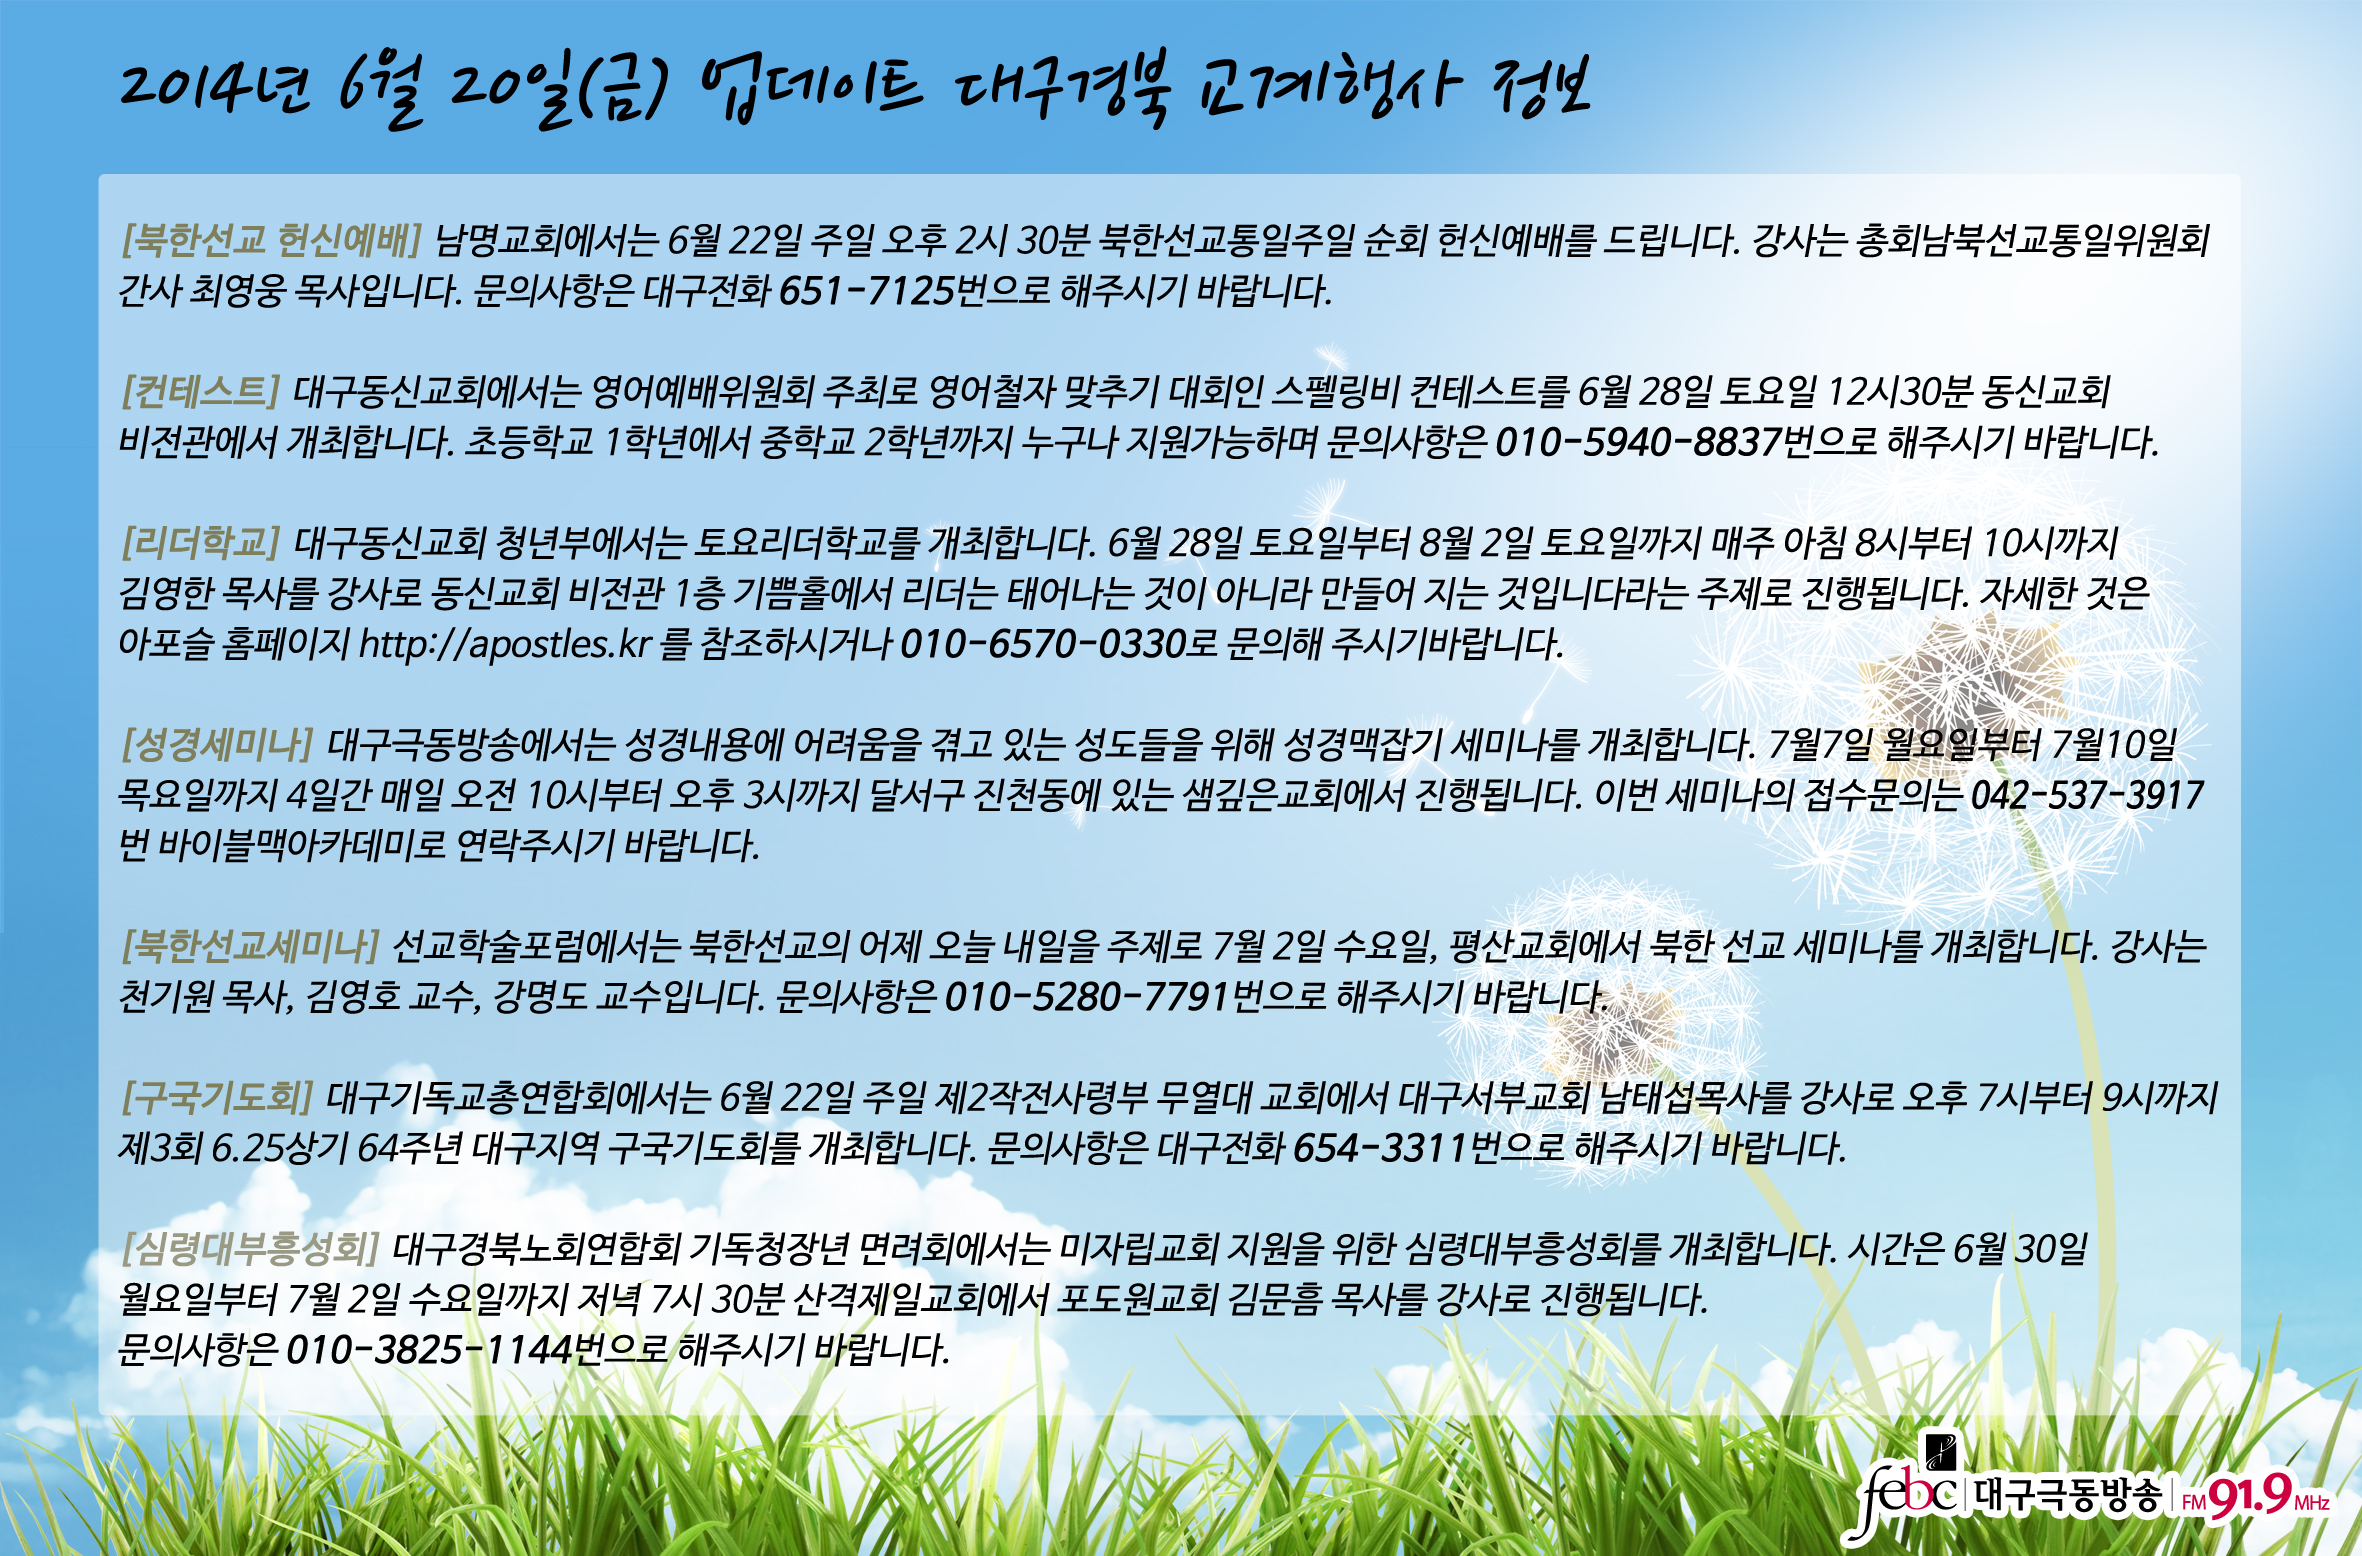 2014년 6월 20일(금) 업데이트 대구경북 교계행사 정보(수정).jpg